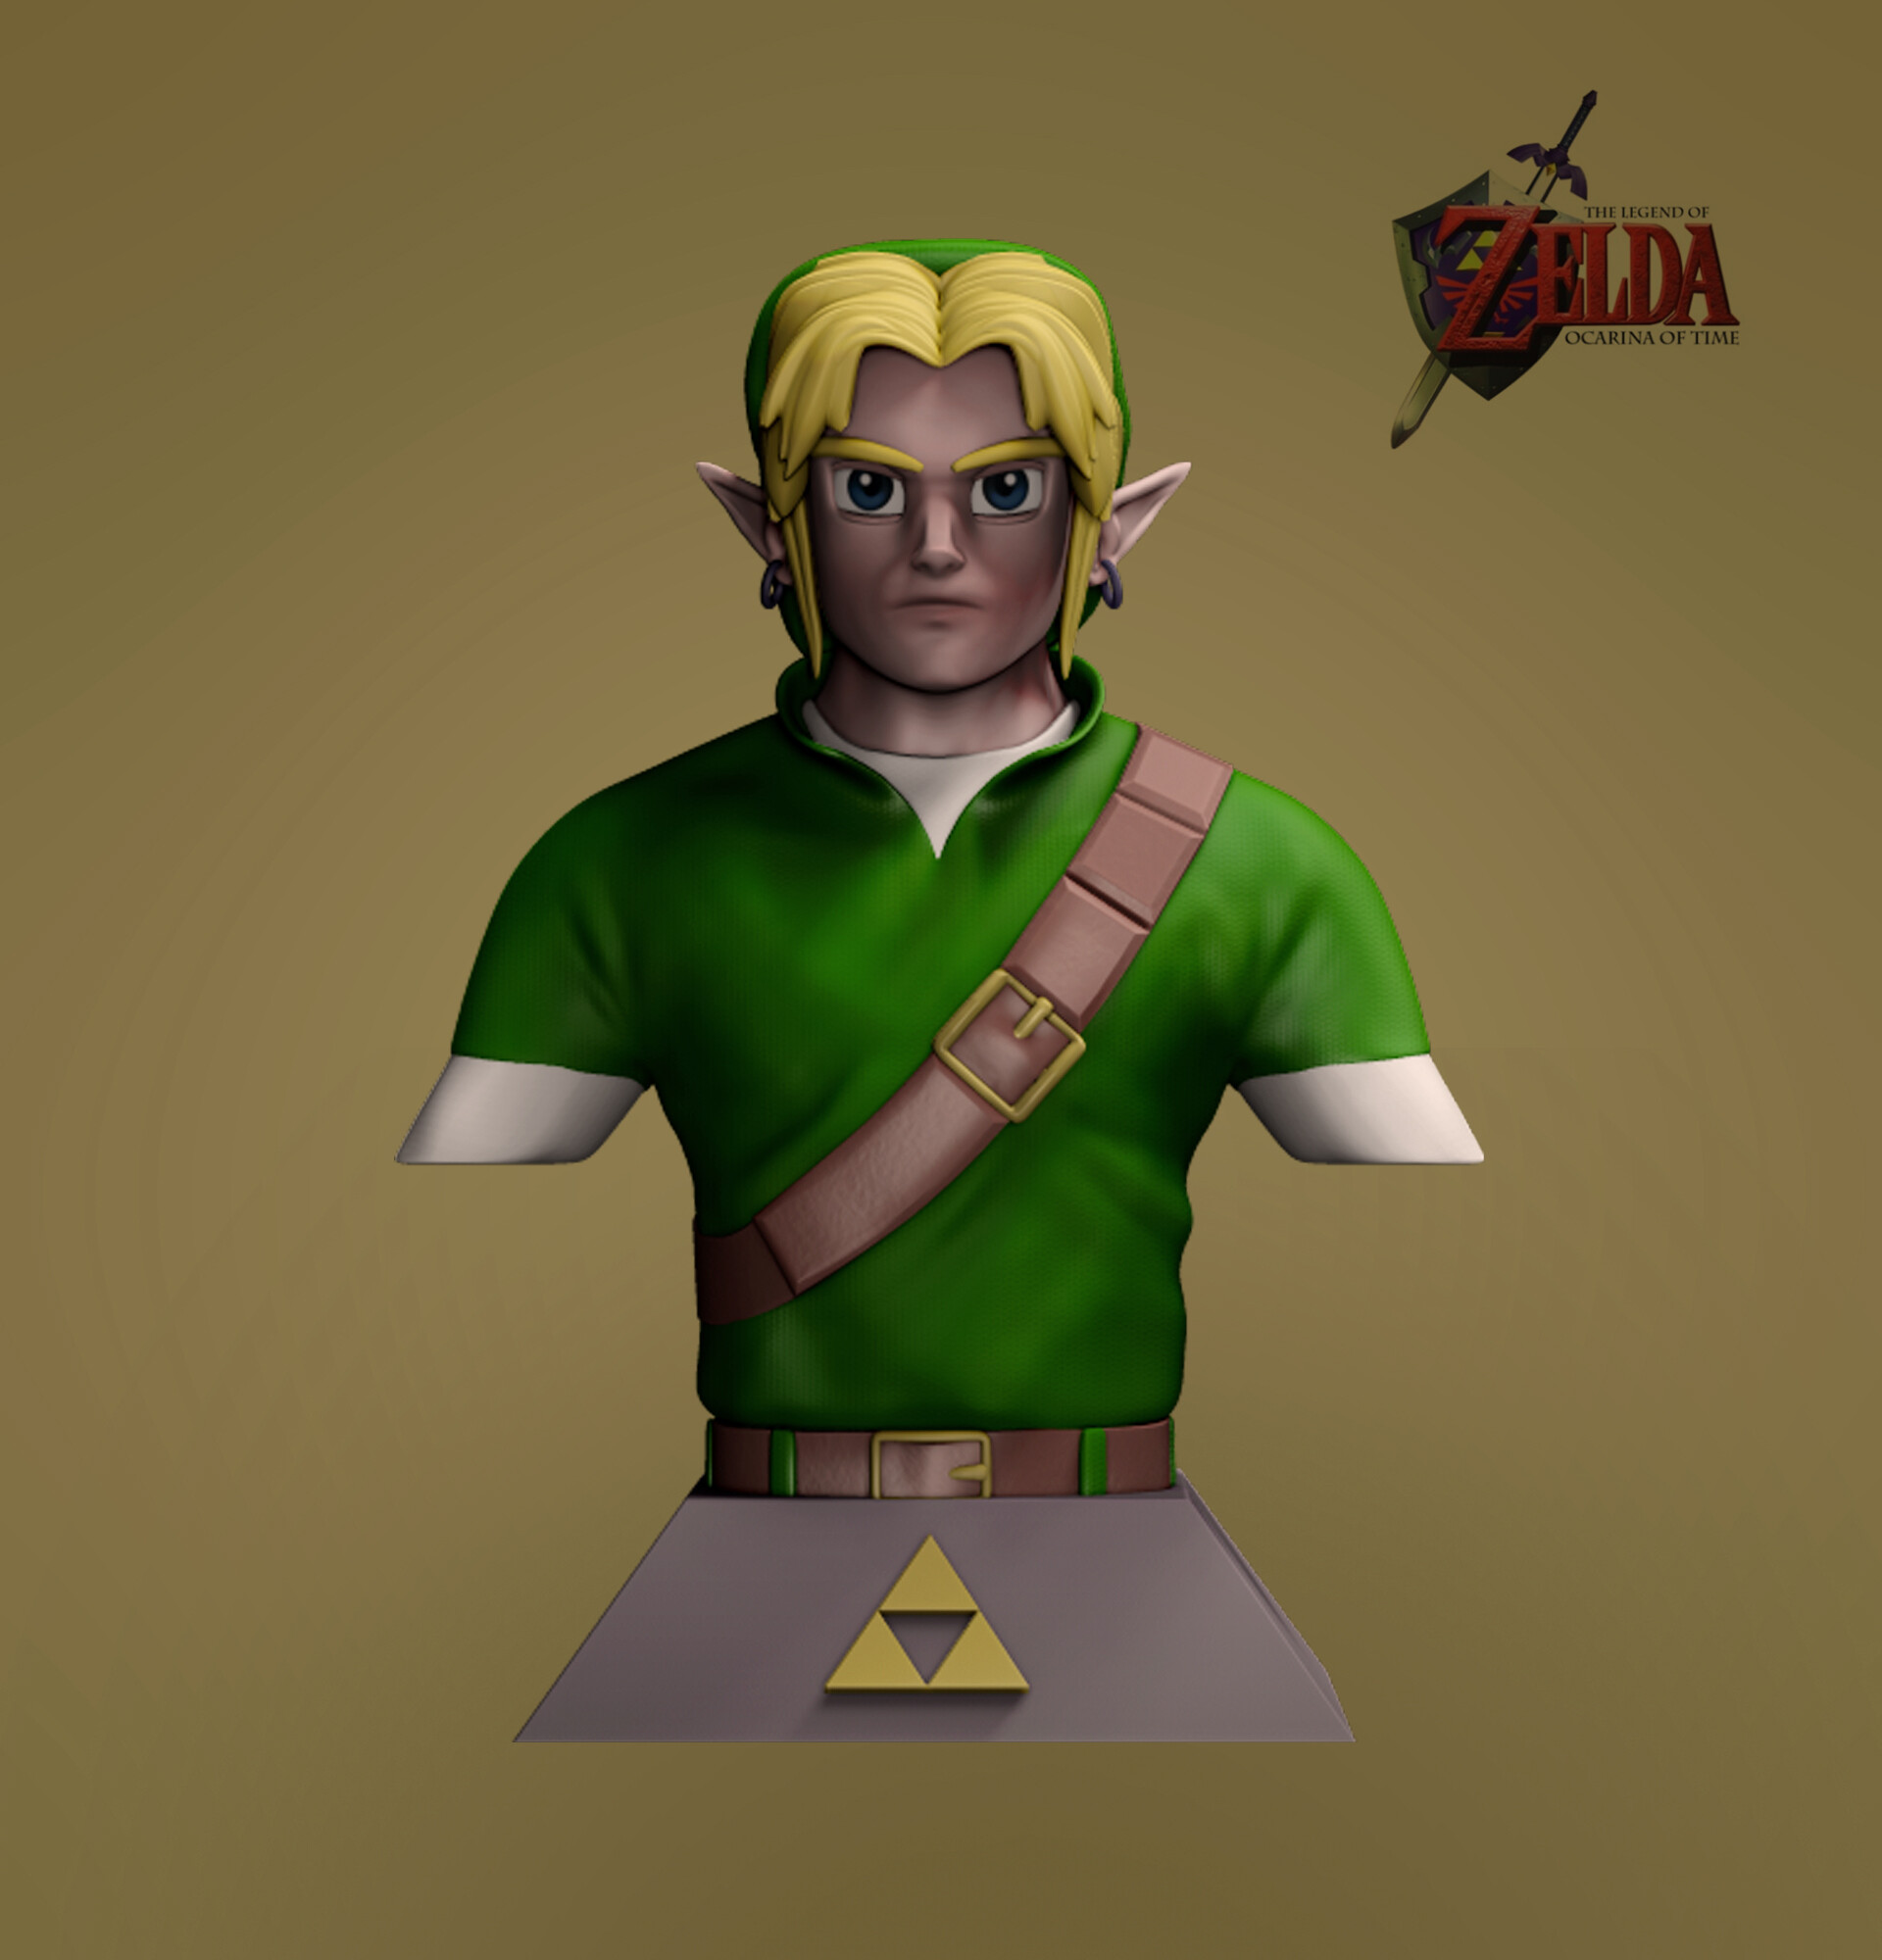 ArtStation - Adult Link - Zelda Ocarina of Time bust.